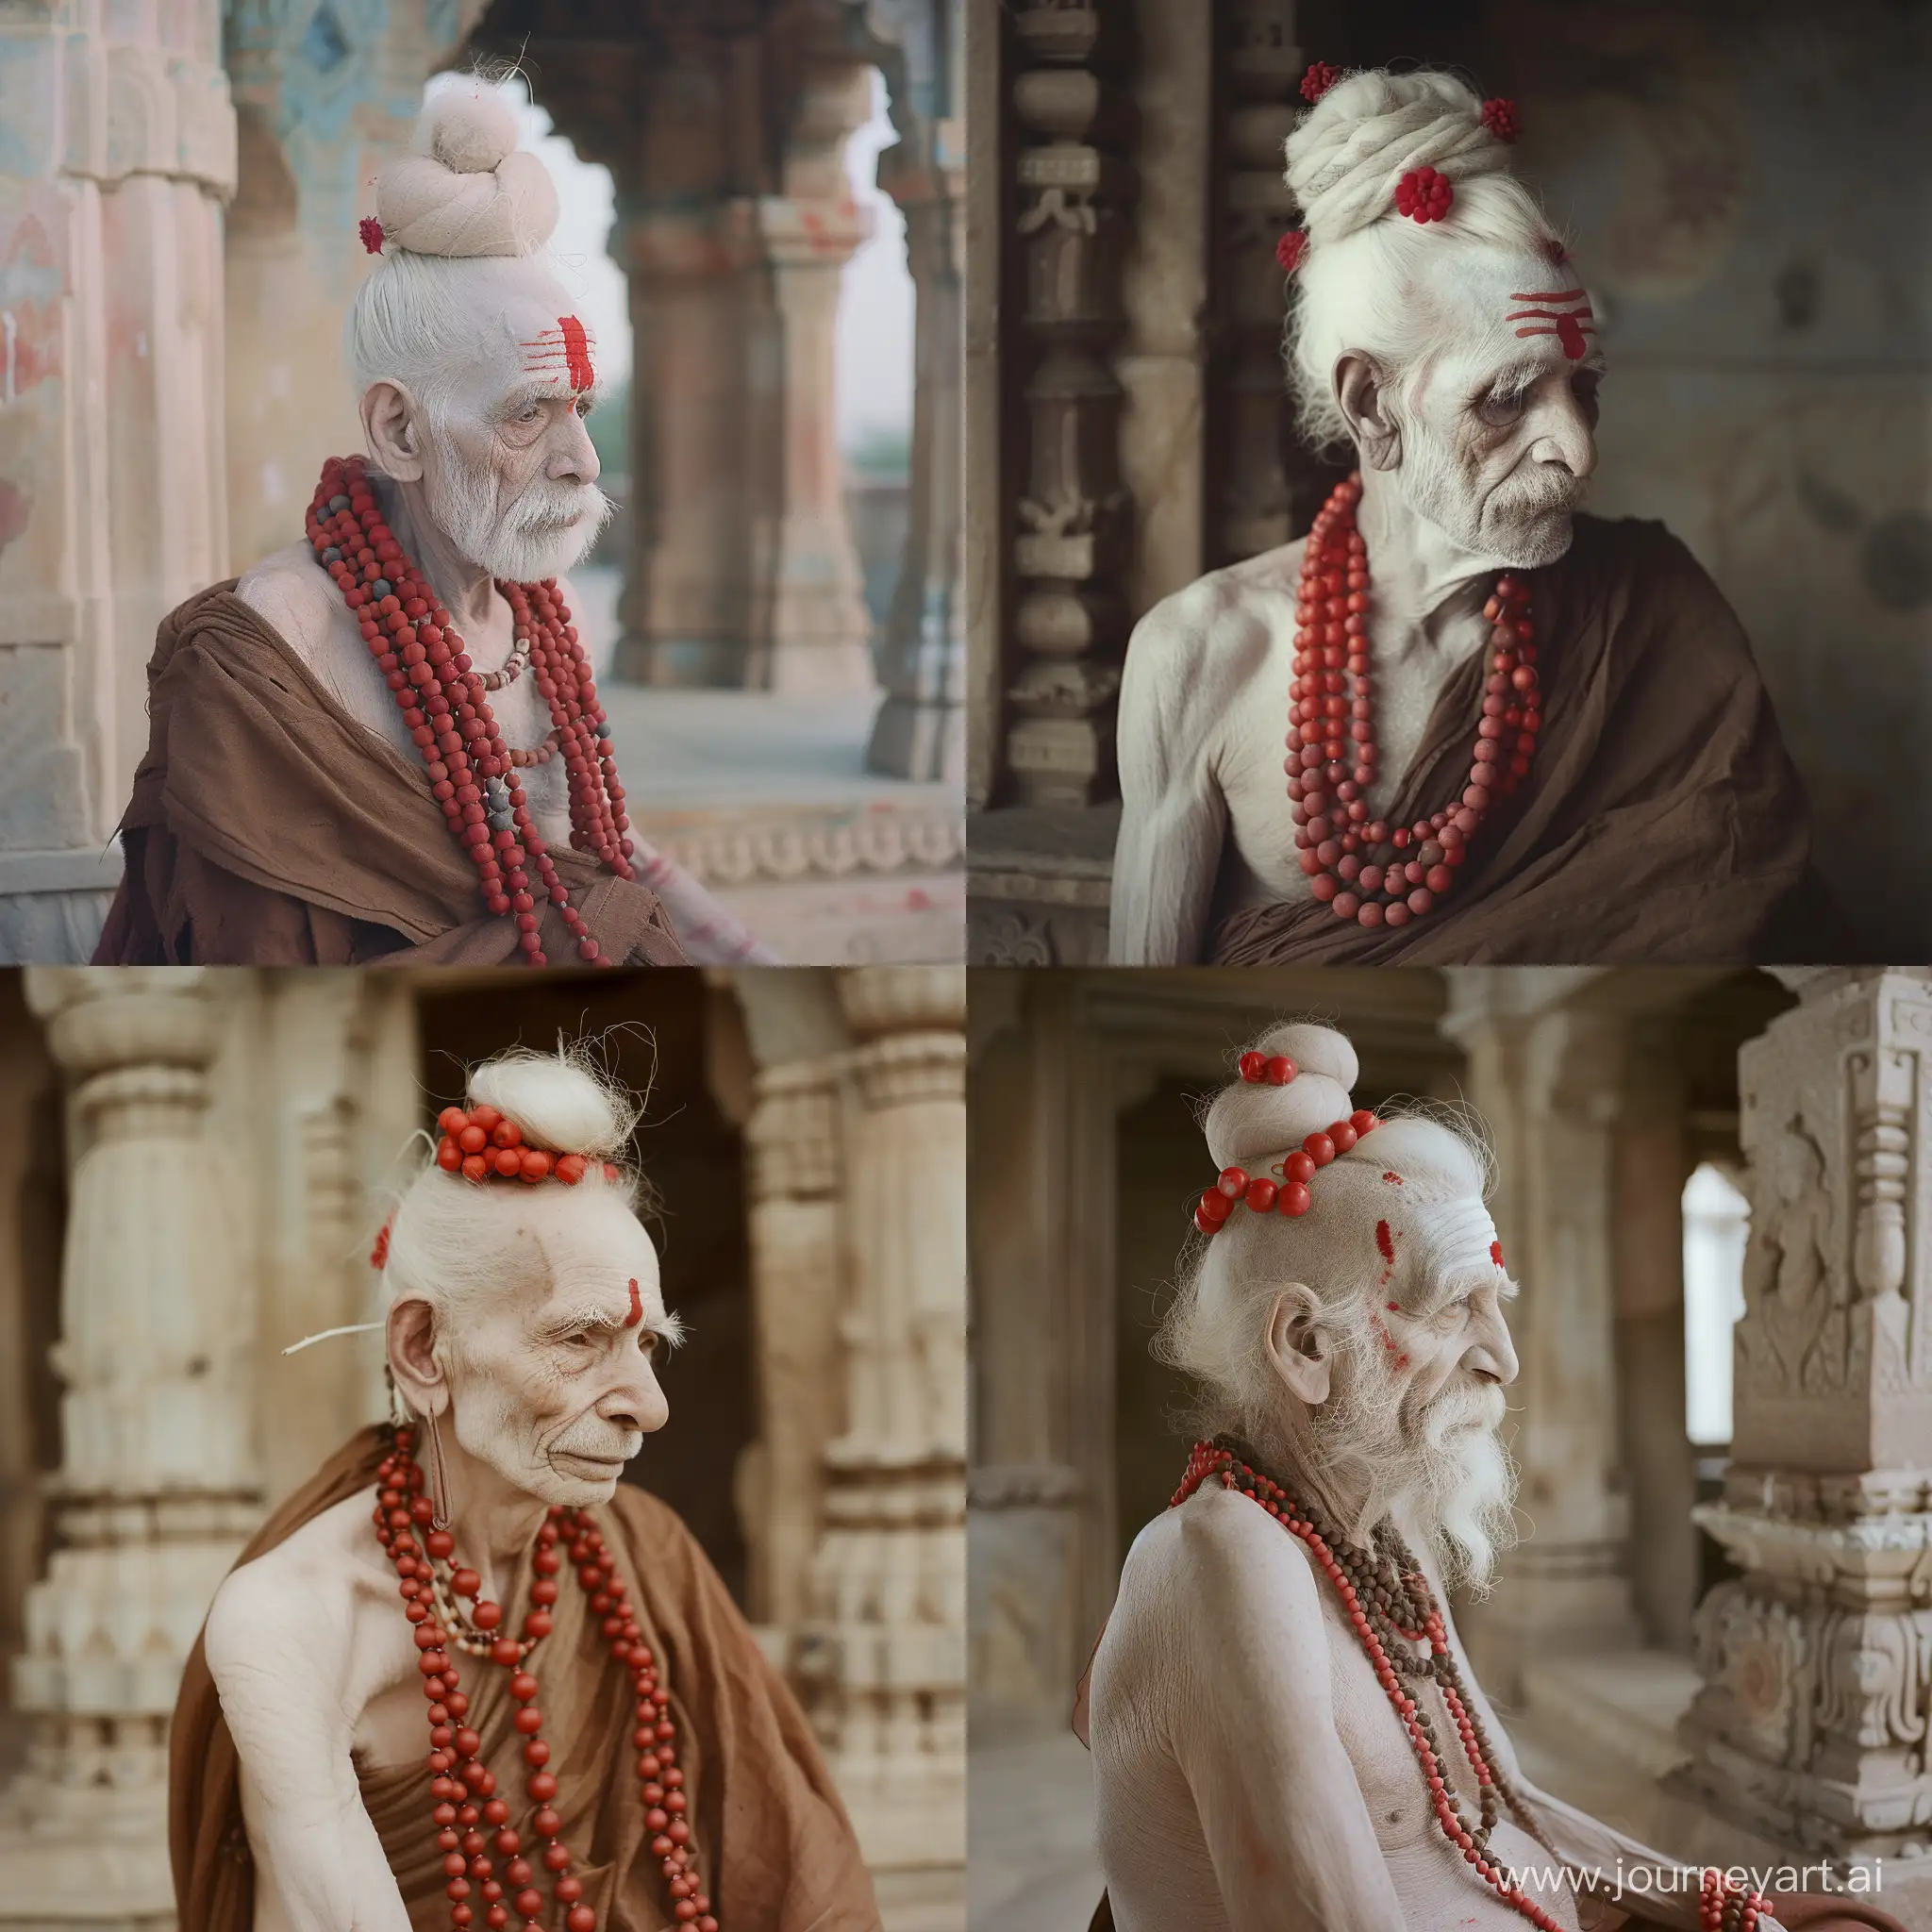 Elderly-Naga-Sadhu-Meditating-at-Ancient-Rajasthan-Temple